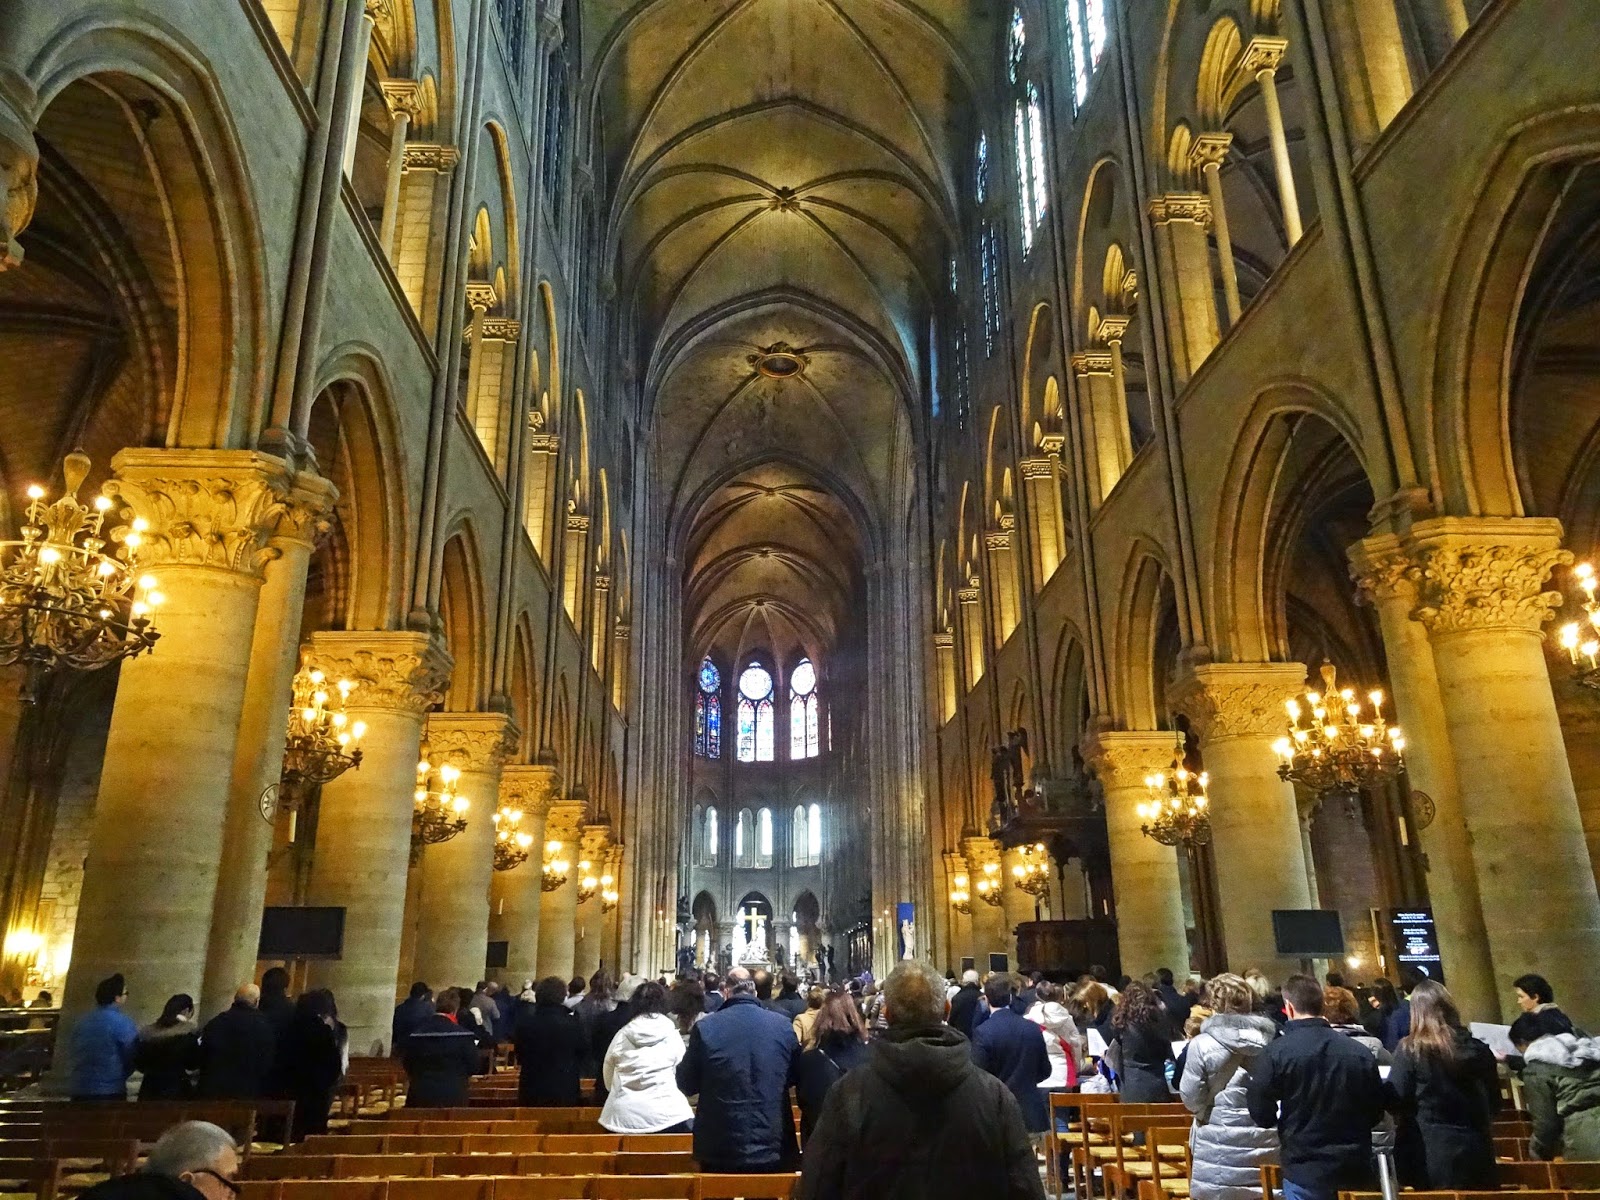 Joe's Retirement Blog: A Look Inside: Notre-Dame de Paris, 4th